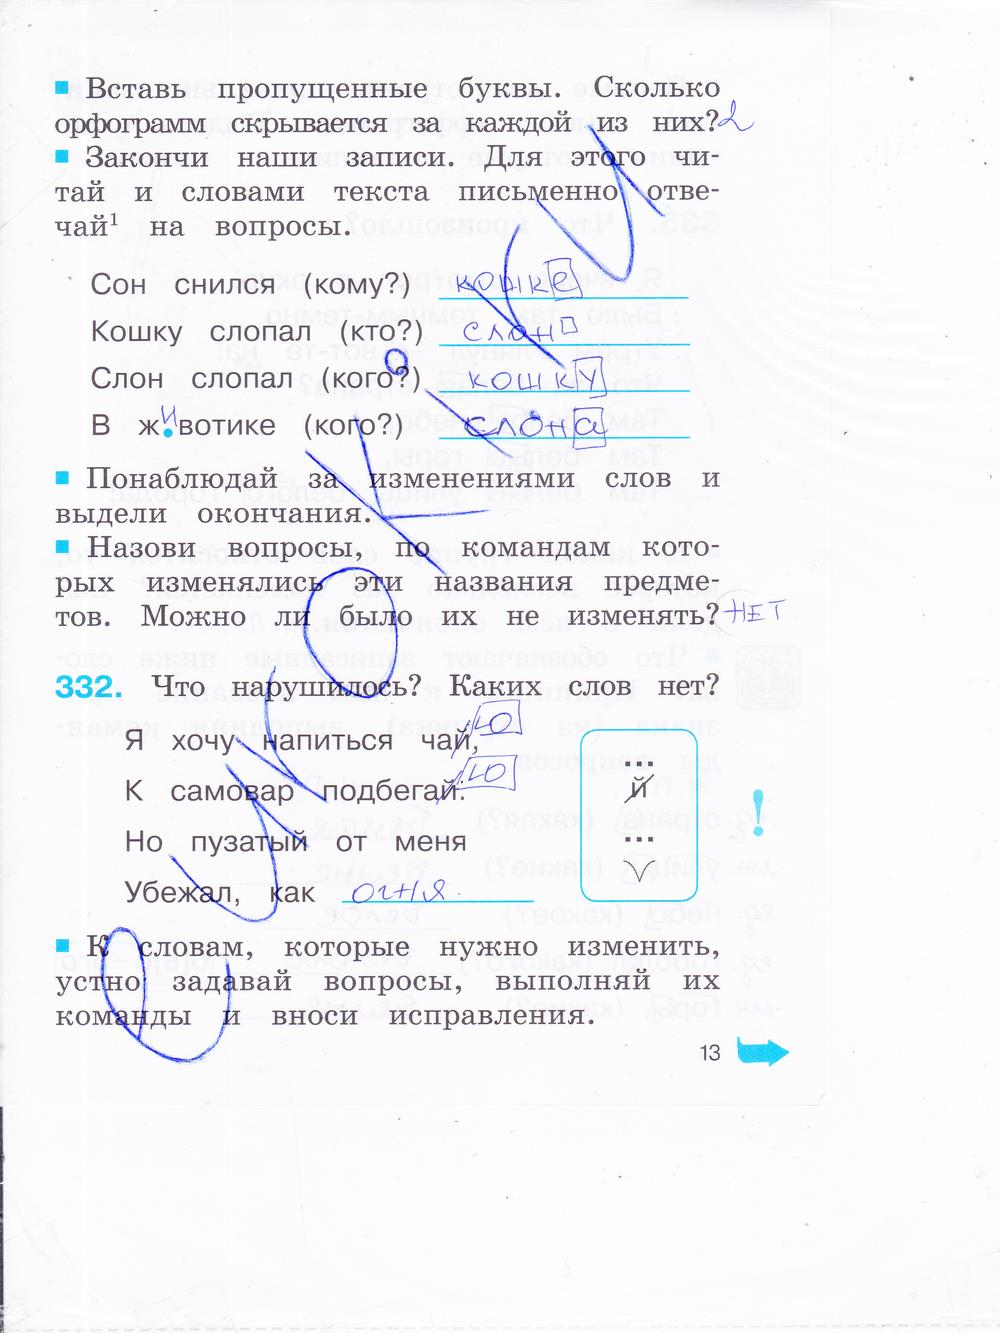 гдз 2 класс рабочая тетрадь часть 2 страница 13 русский язык Соловейчик, Кузьменко